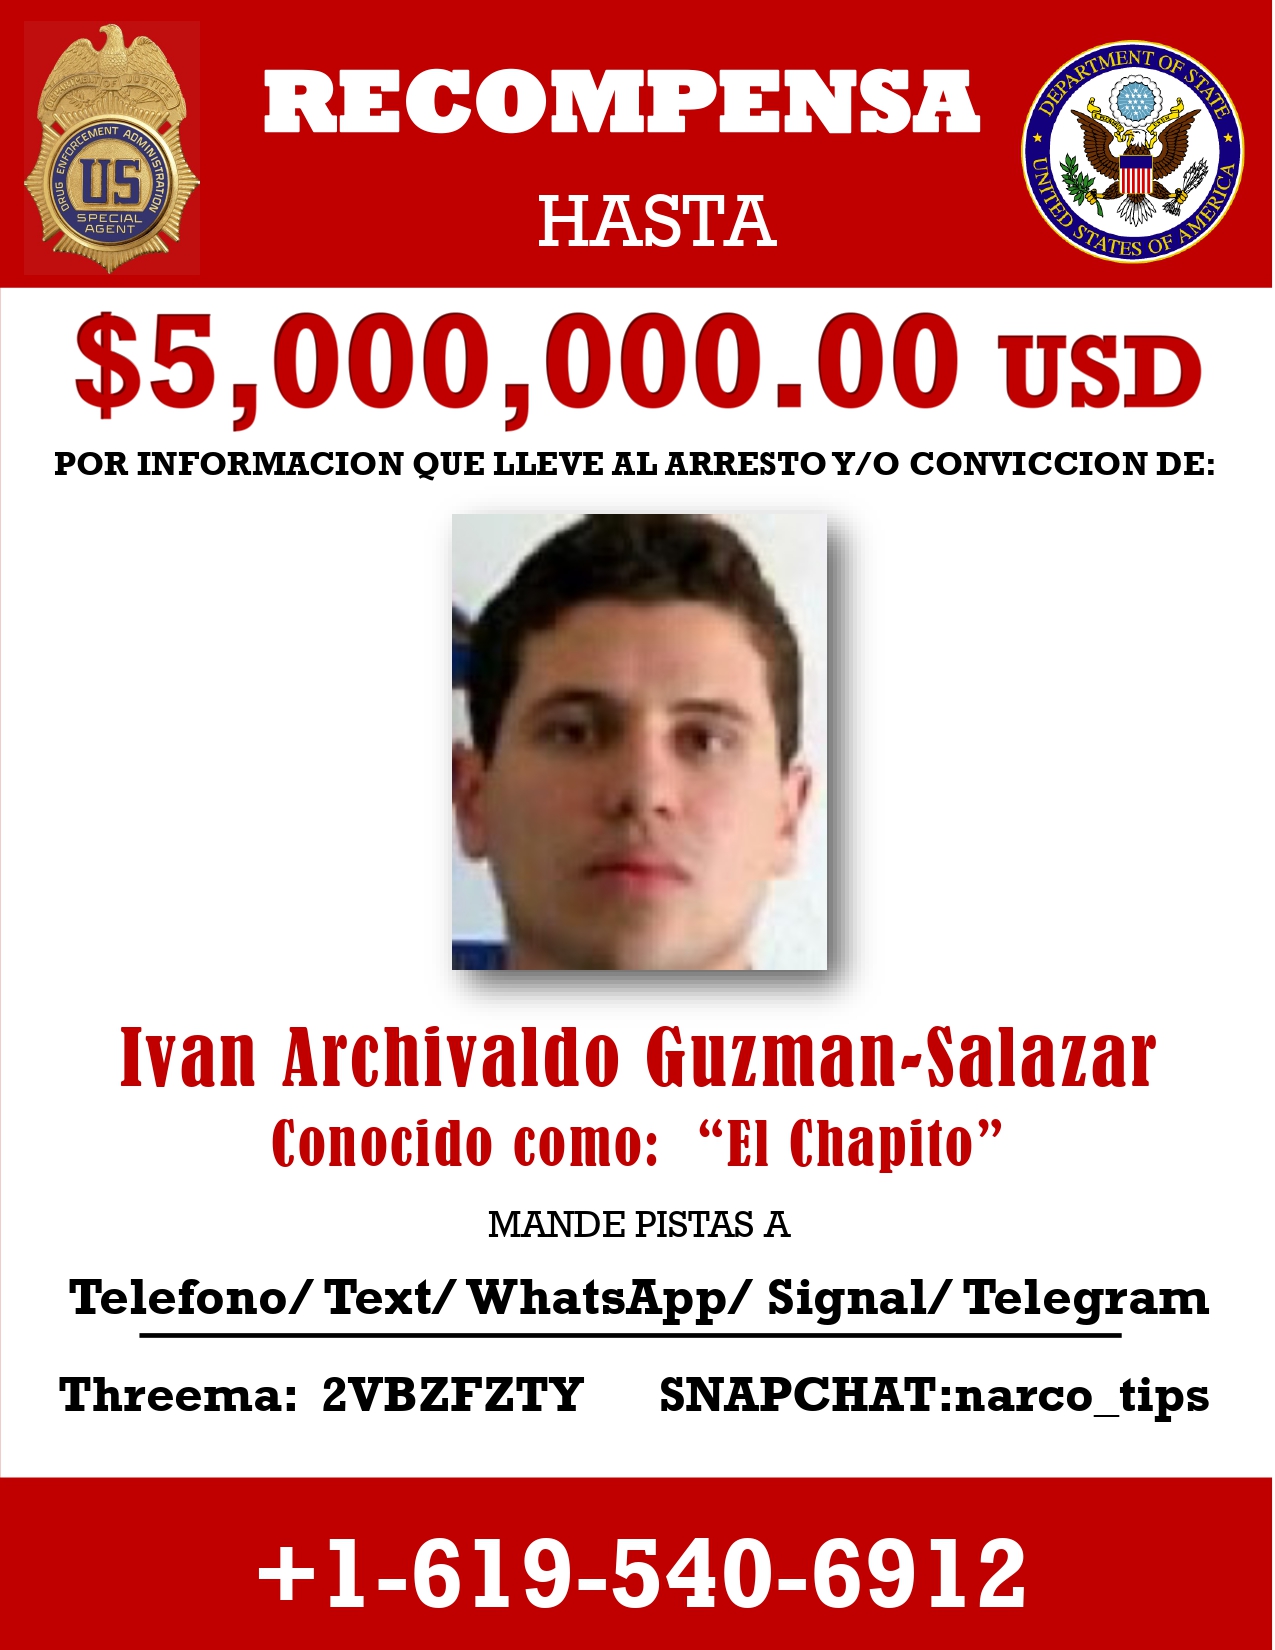 EEUU publicó póster de recompensa por “Los Chapitos”, hijos de Joaquín Guzmán Loera (Foto: Departamento de Estado, EEUU)